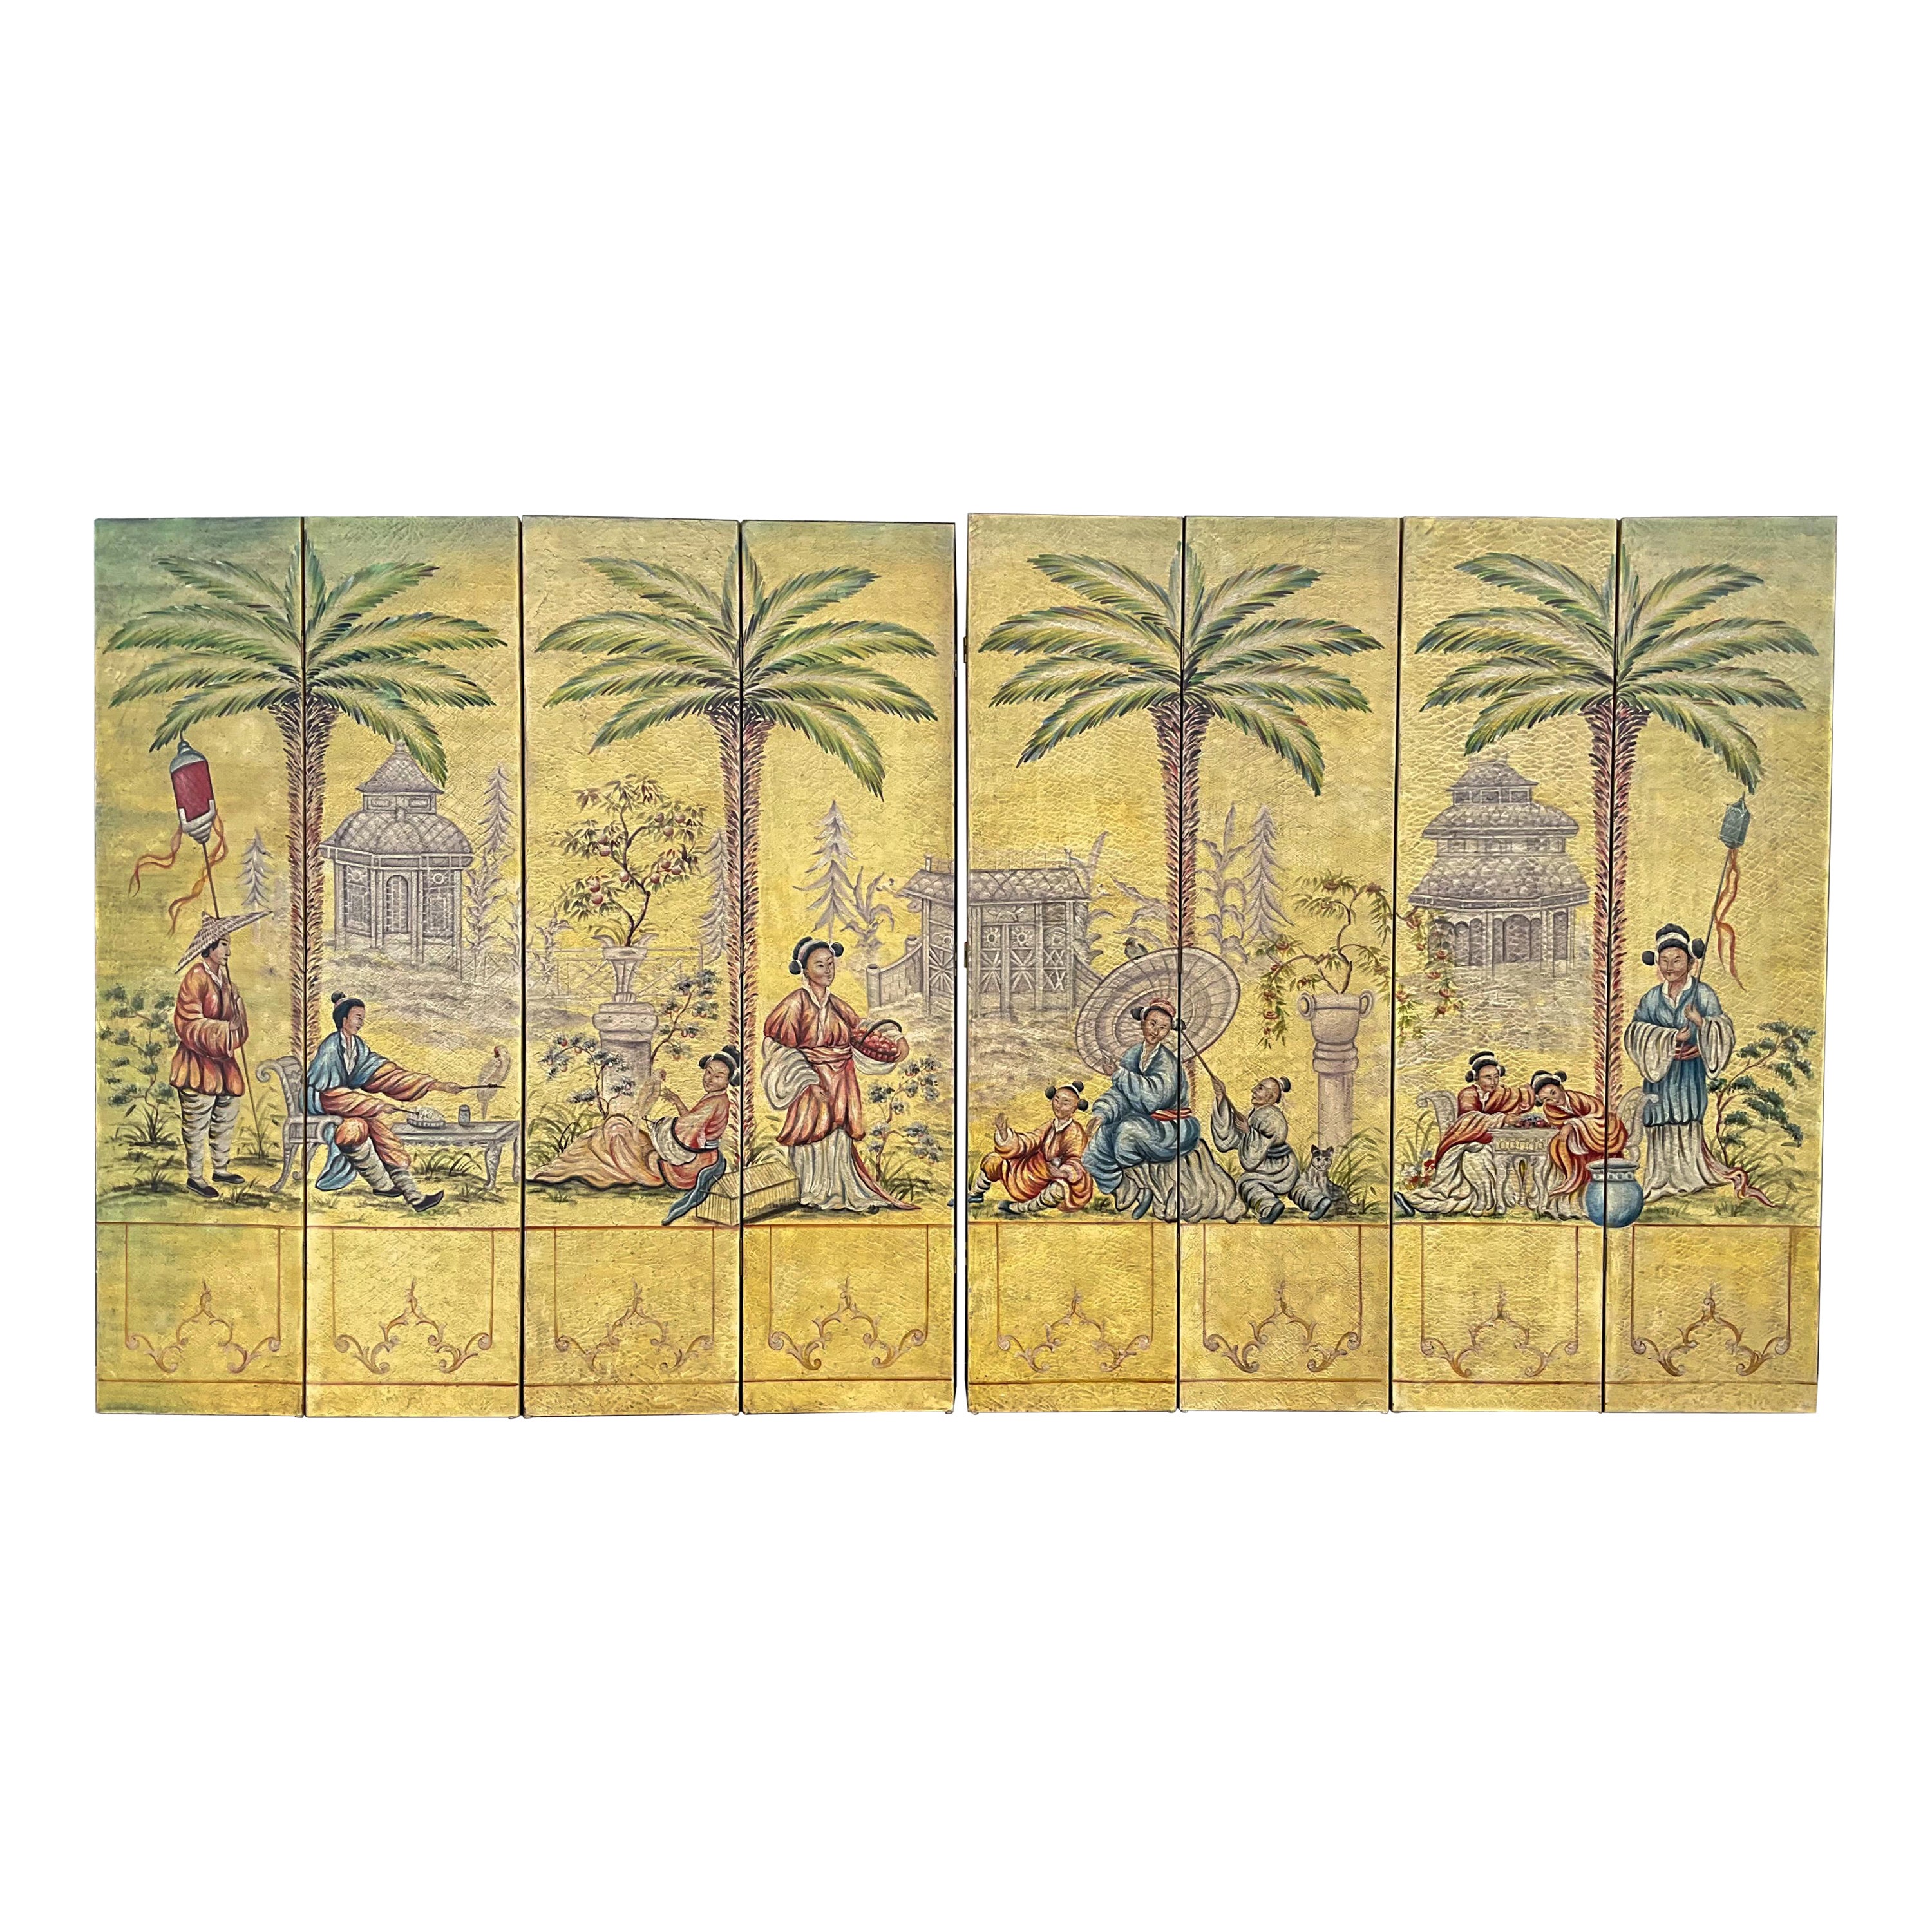 20e siècle. Paravent peint d'inspiration chinoiseries inspiré de Palm Beach - 8 panneaux